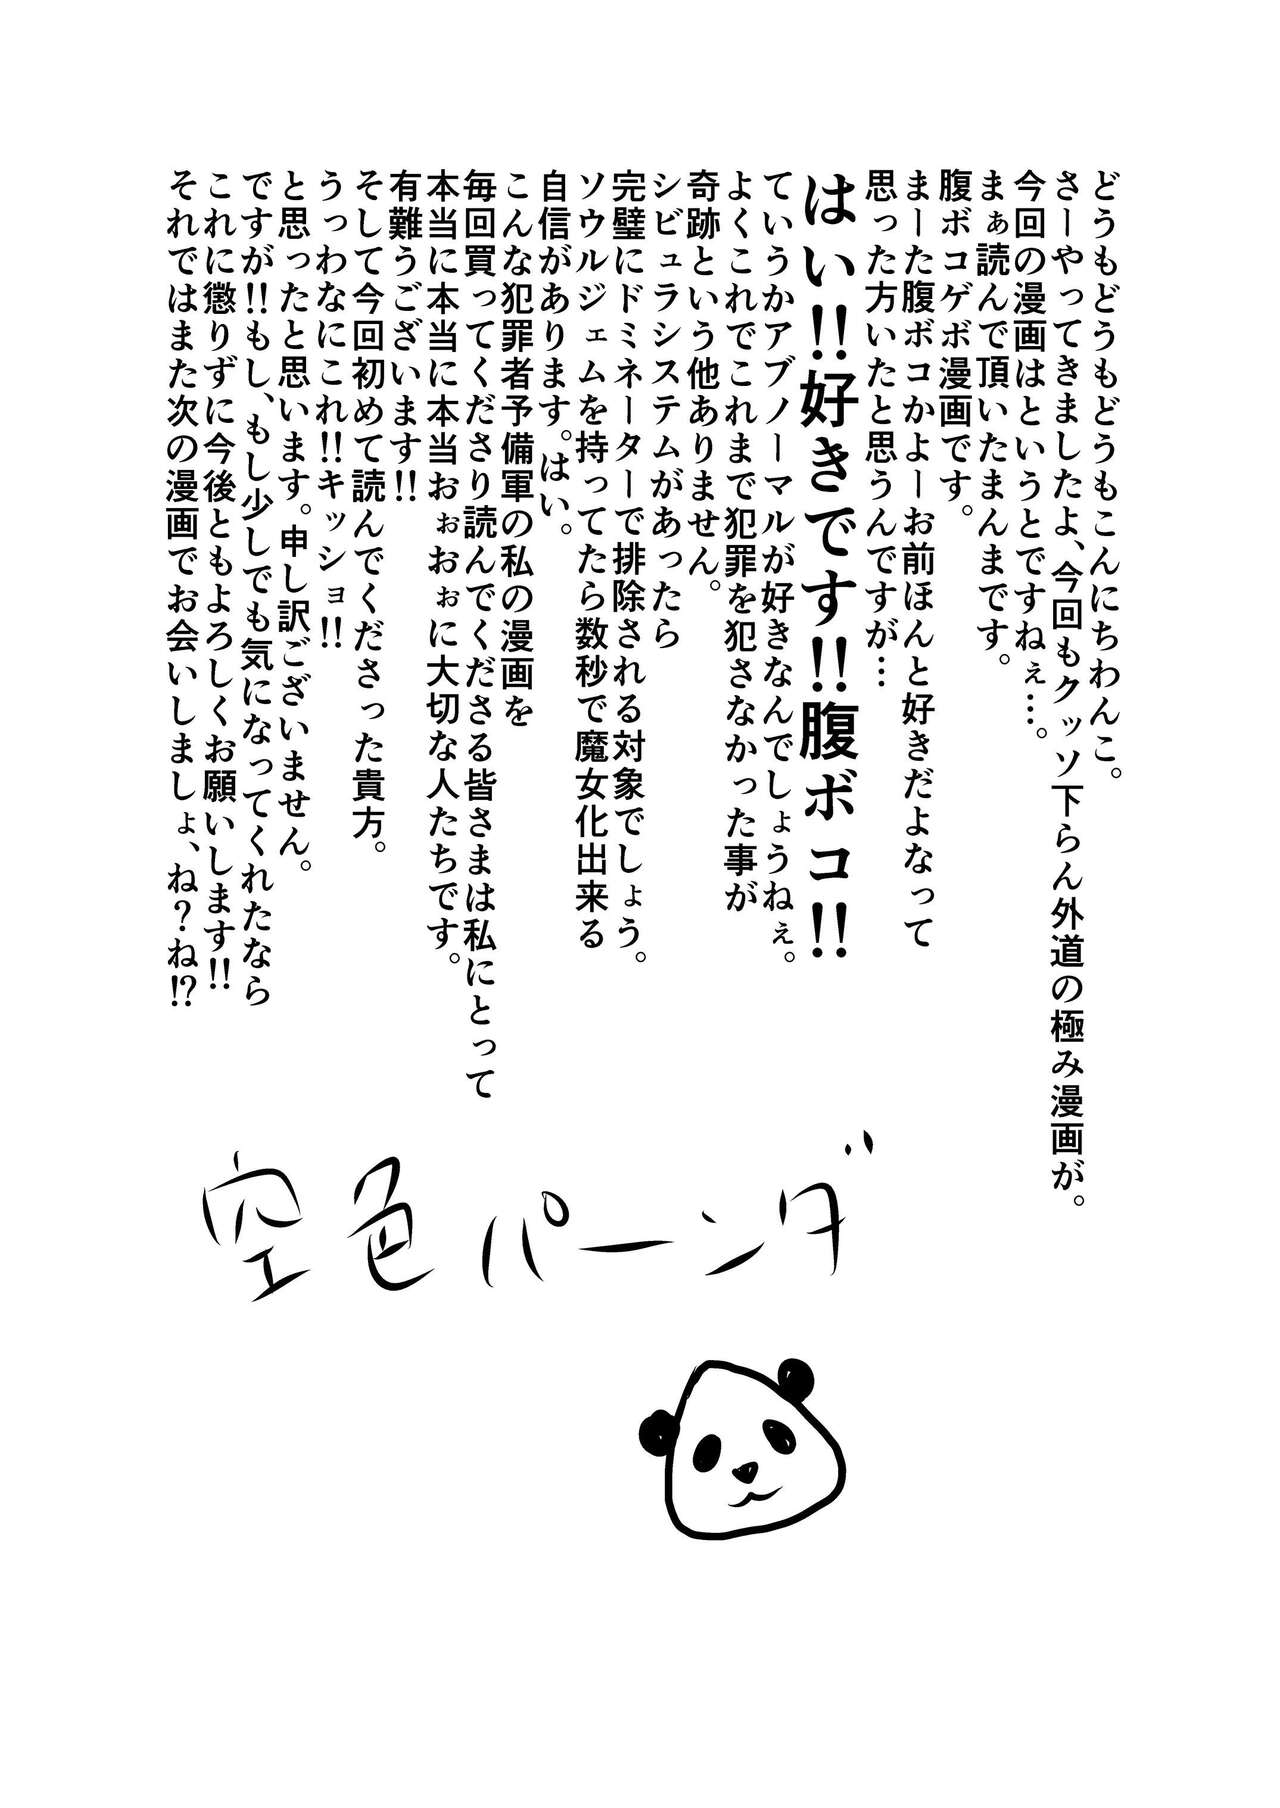 Yamome ヤモメ Sorairo Panda 空色パソダ Youkai no Mori Yoru-hen 妖の森 夜編